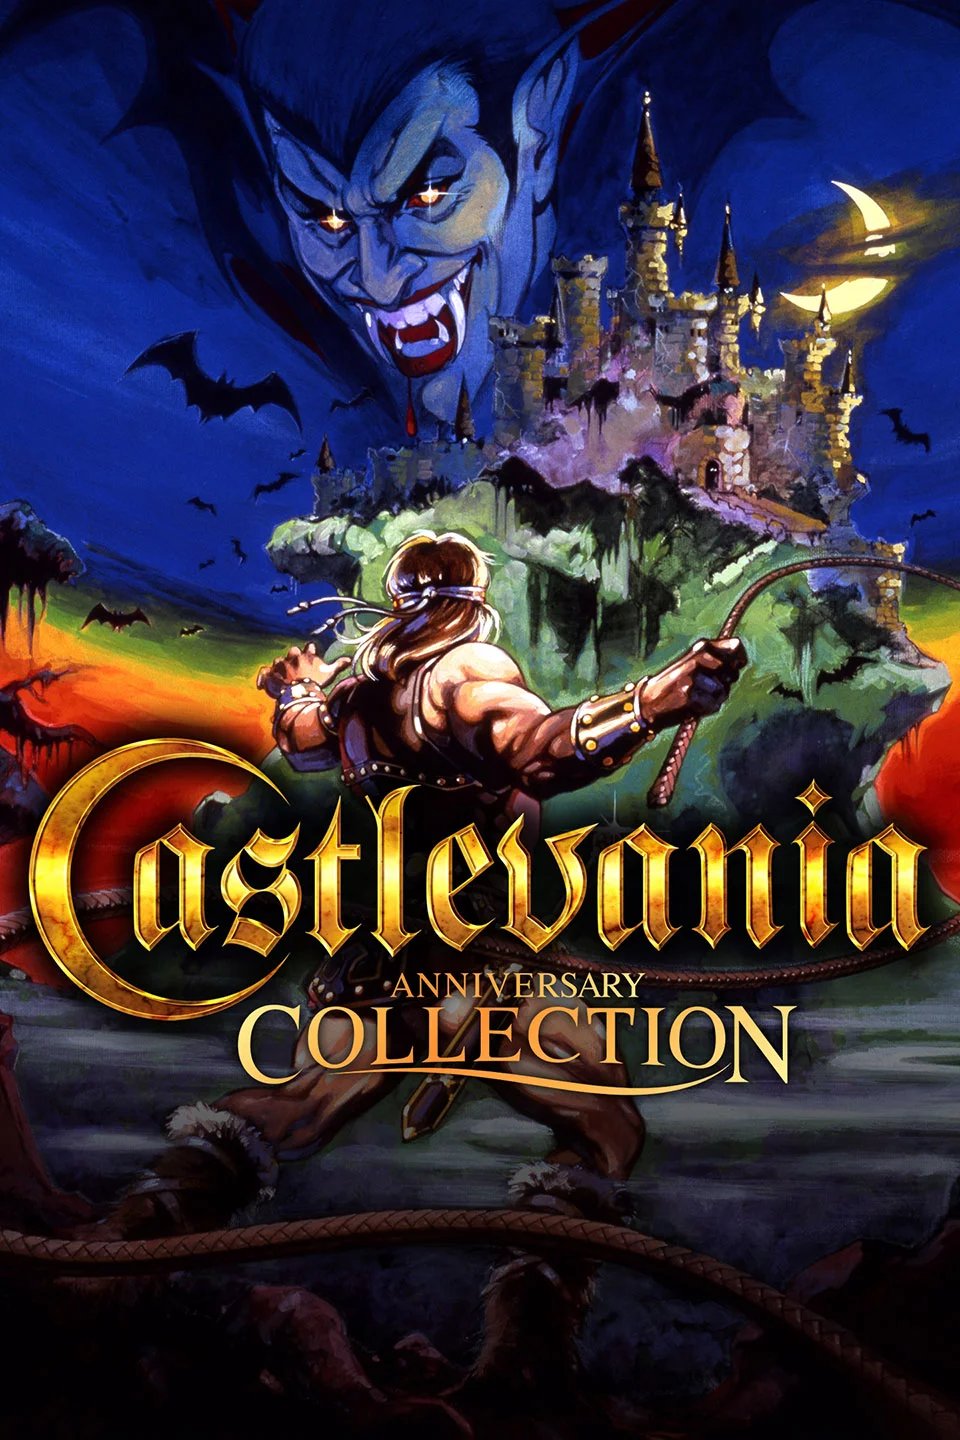 Capa do jogo Castlevania Anniversary Collection